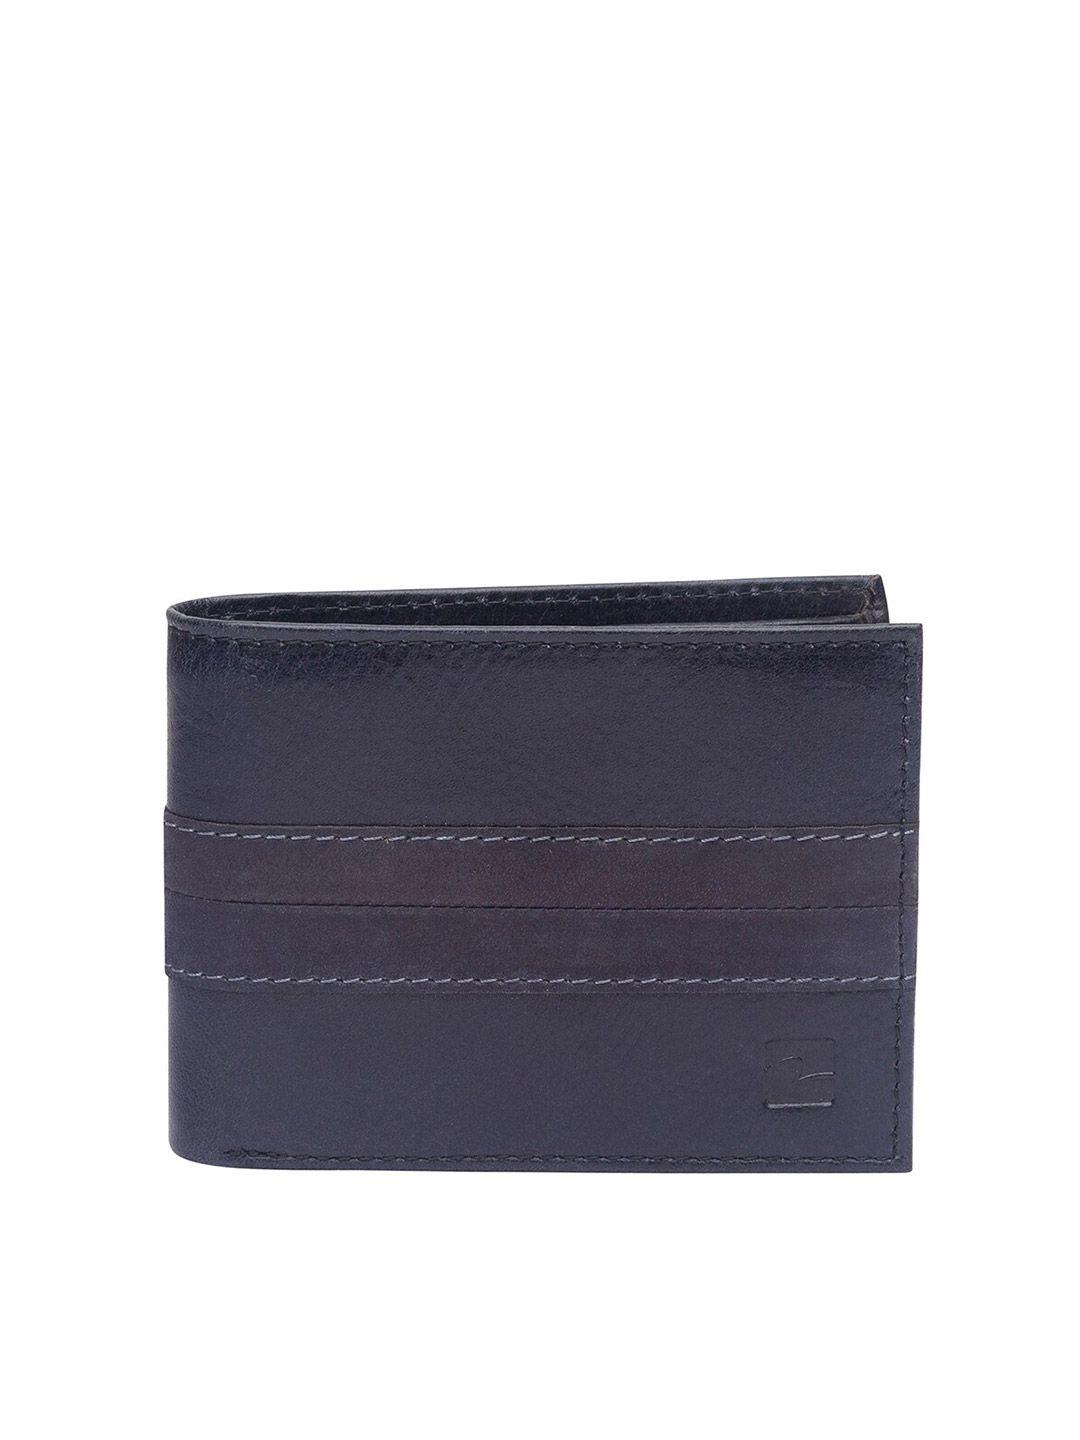 spykar-men-grey-leather-two-fold-wallet